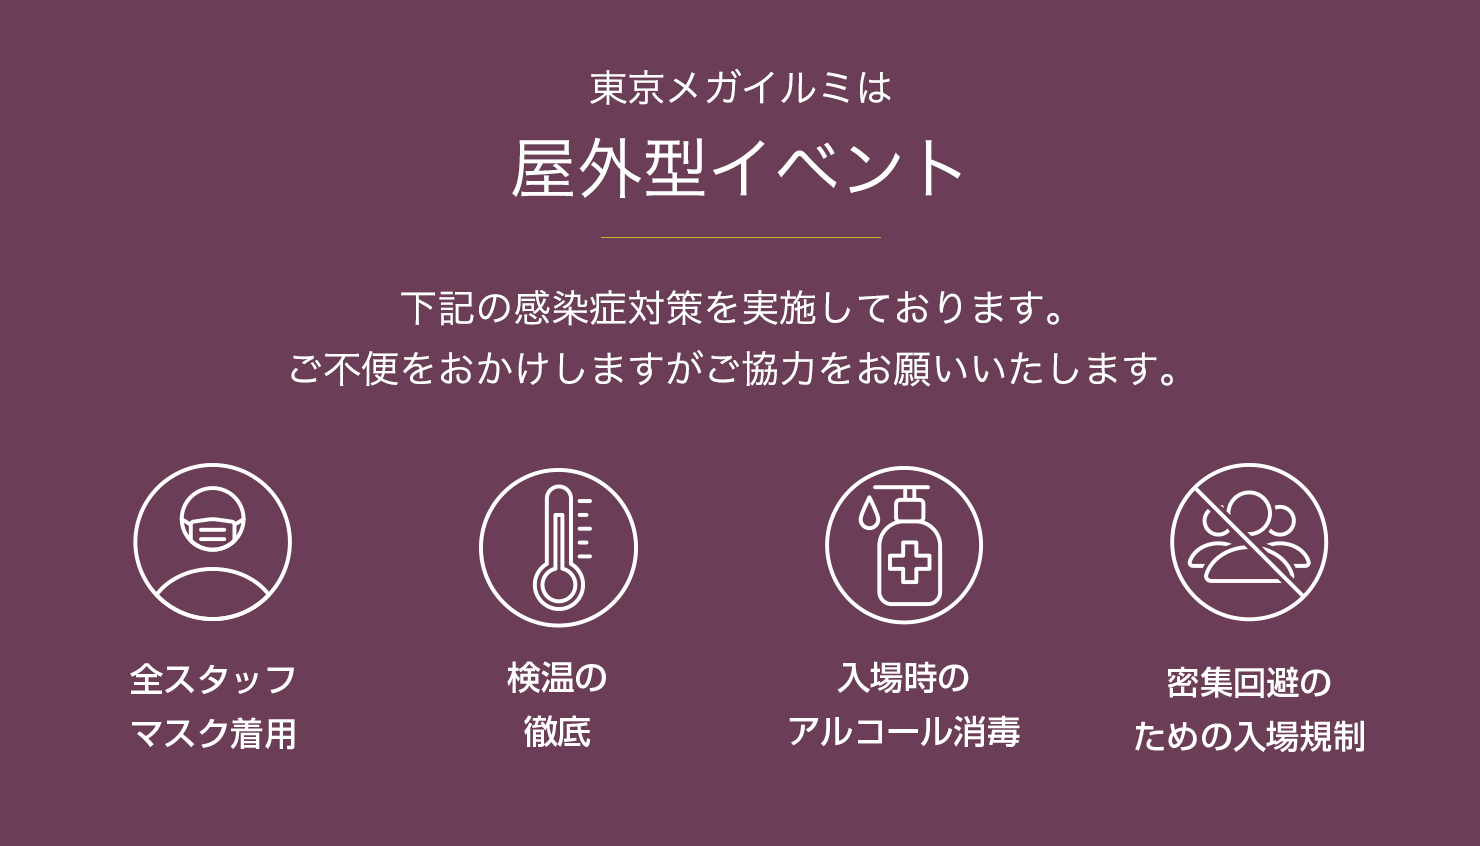 東京メガイルミは屋外型イベント／下記の感染症対策を実施しております。ご不便をおかけしますがご協力をお願いいたします。全スタッフマスク着用／検温の徹底／入場時のアルコール消毒／密集回避のための入場規制